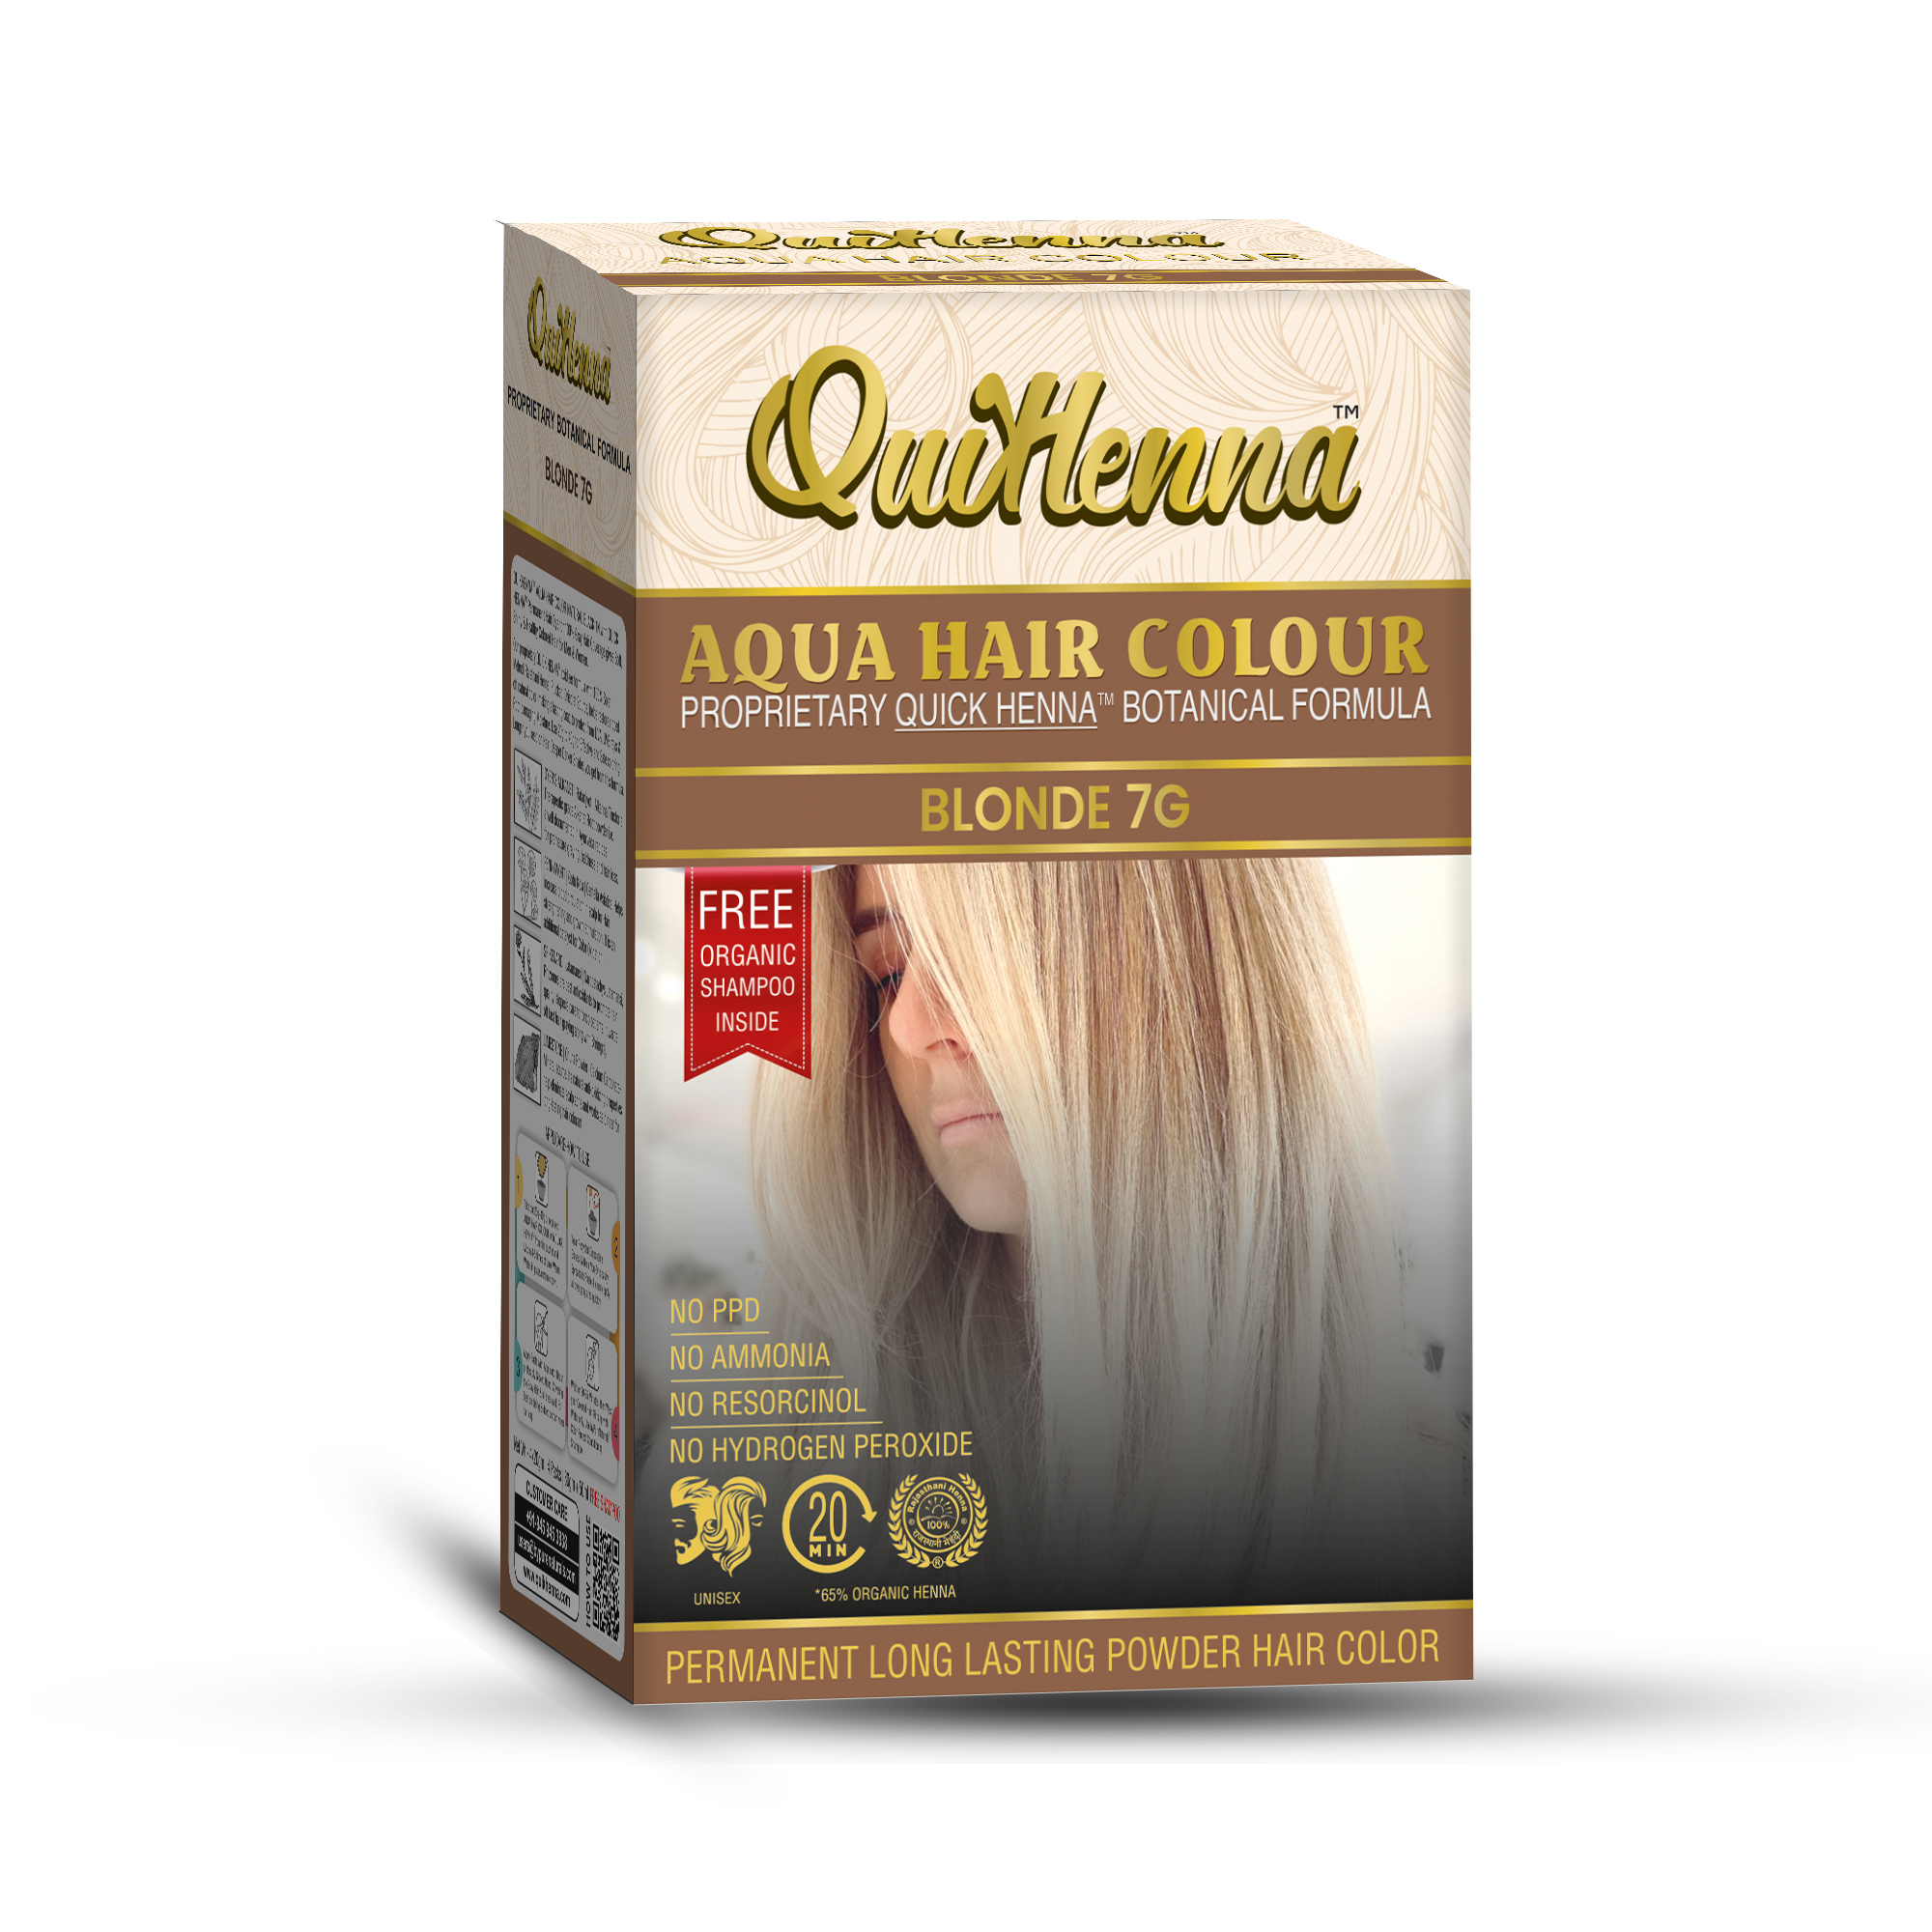 Organic Aqua Powder Hair colour- 7G Blonde